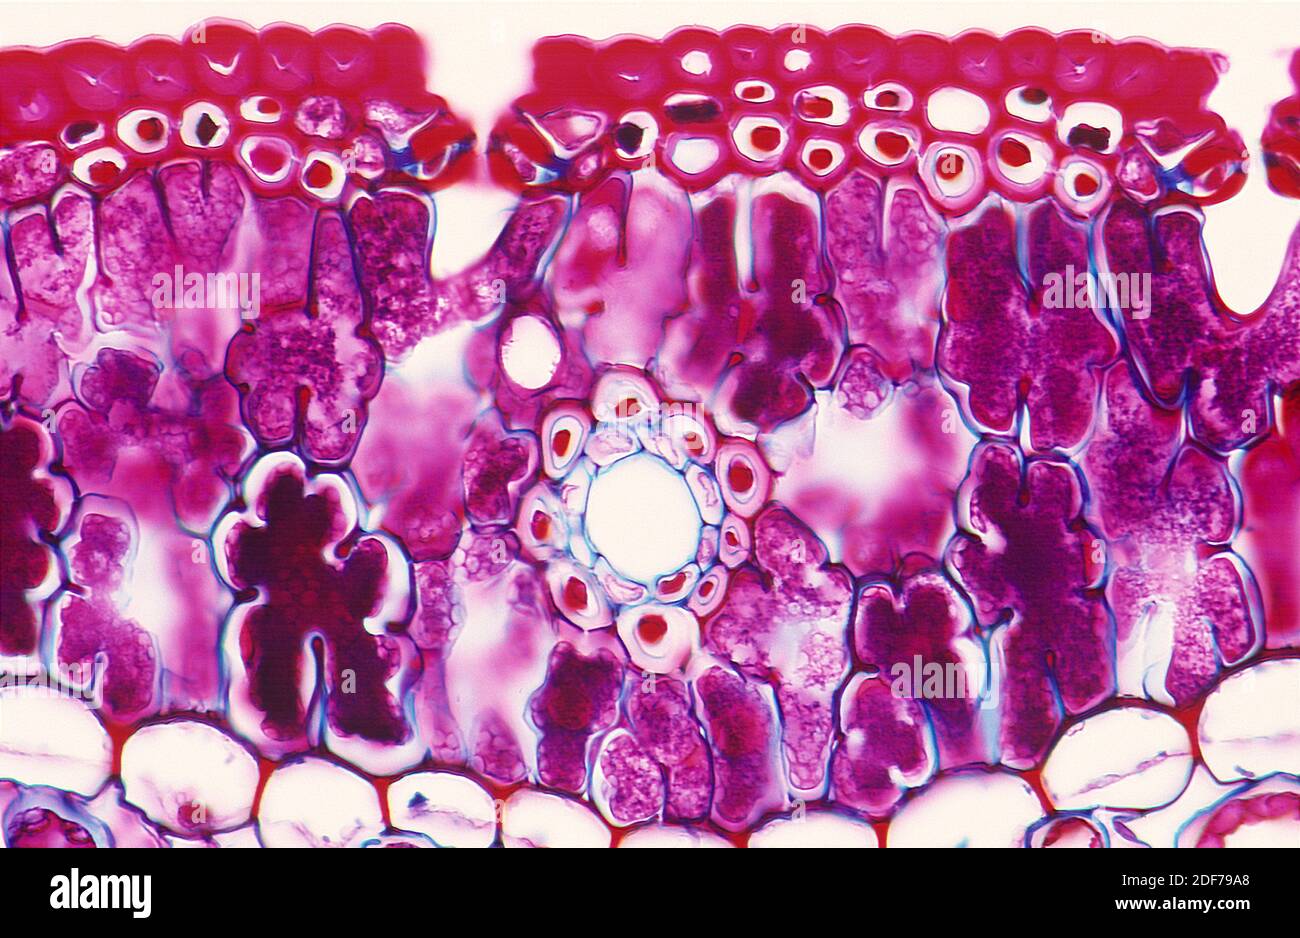 Hoja, sección transversal que muestra epidermis superior con cutícula, estomas, parénquima palisado y células de vaina de bandles. Fotomicrografía. Foto de stock